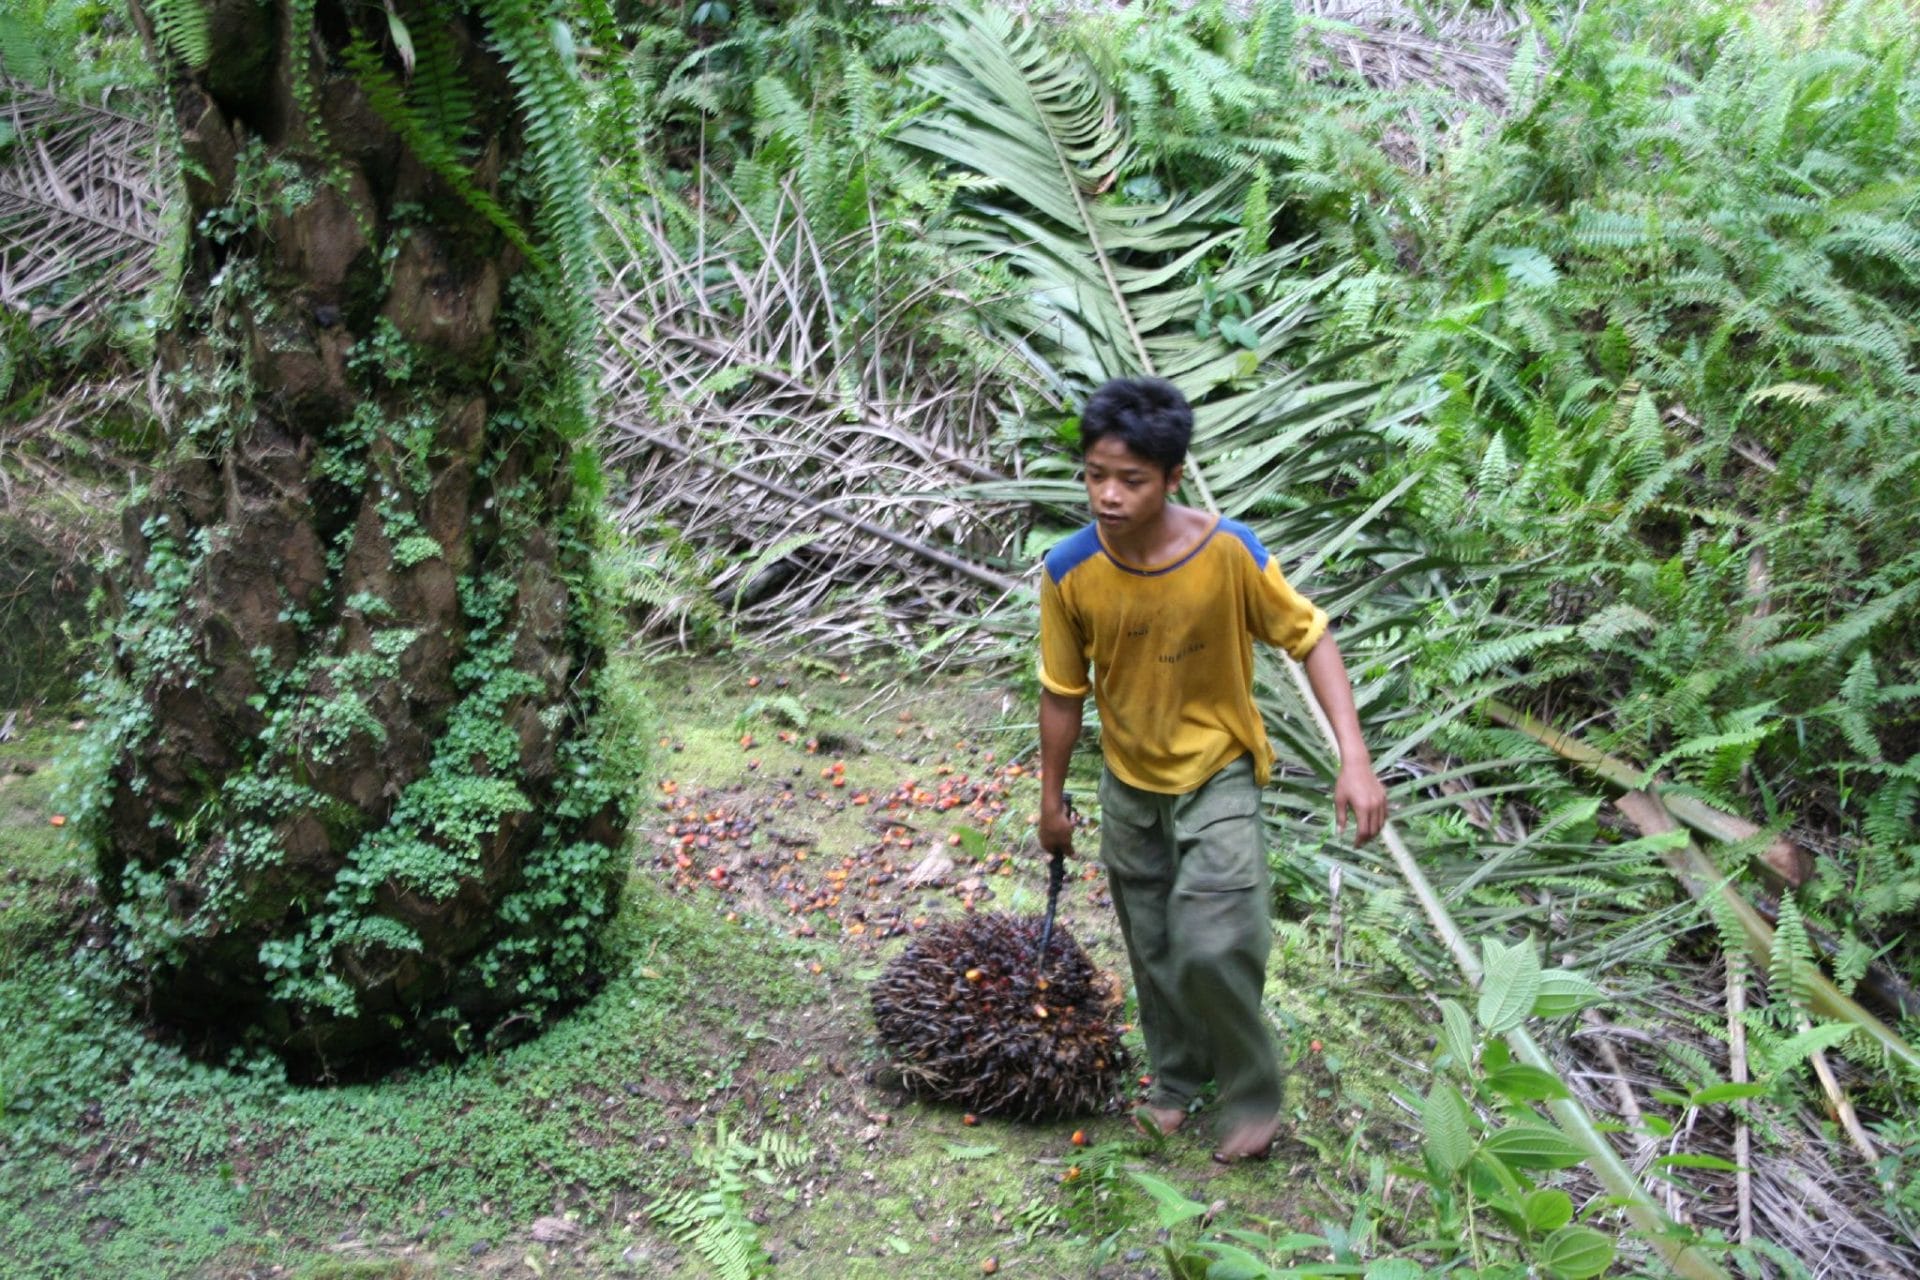 West Kalimantan boy in forest